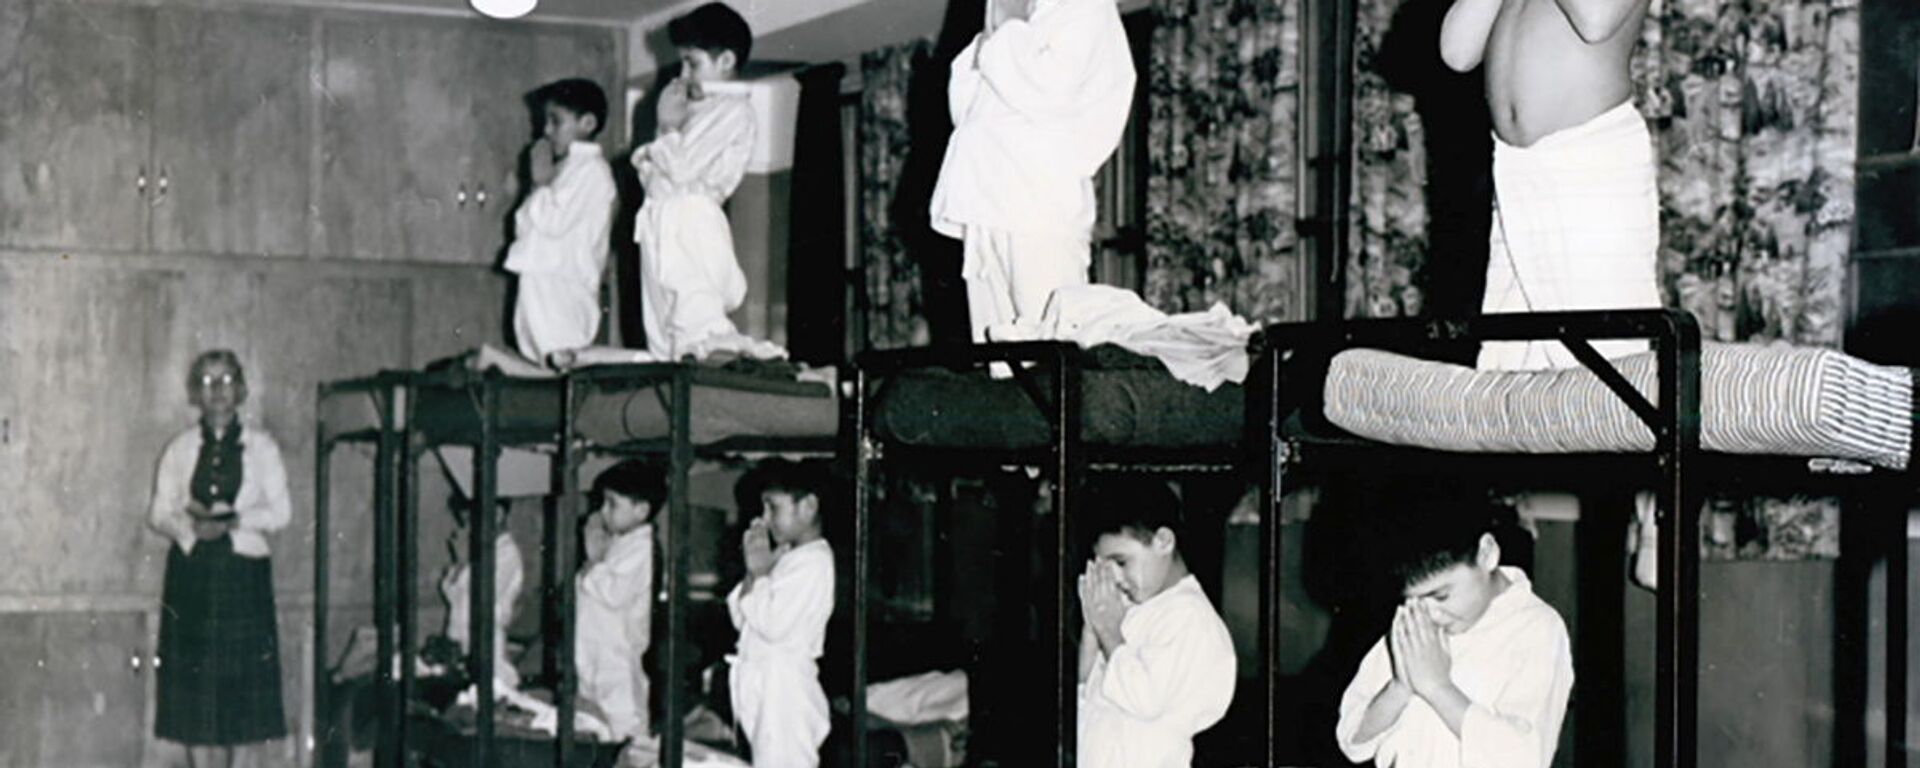 Мальчики молятся на кроватях в школе-интернате Bishop Horden в Канаде, 1950 год  - Sputnik Mundo, 1920, 07.06.2021